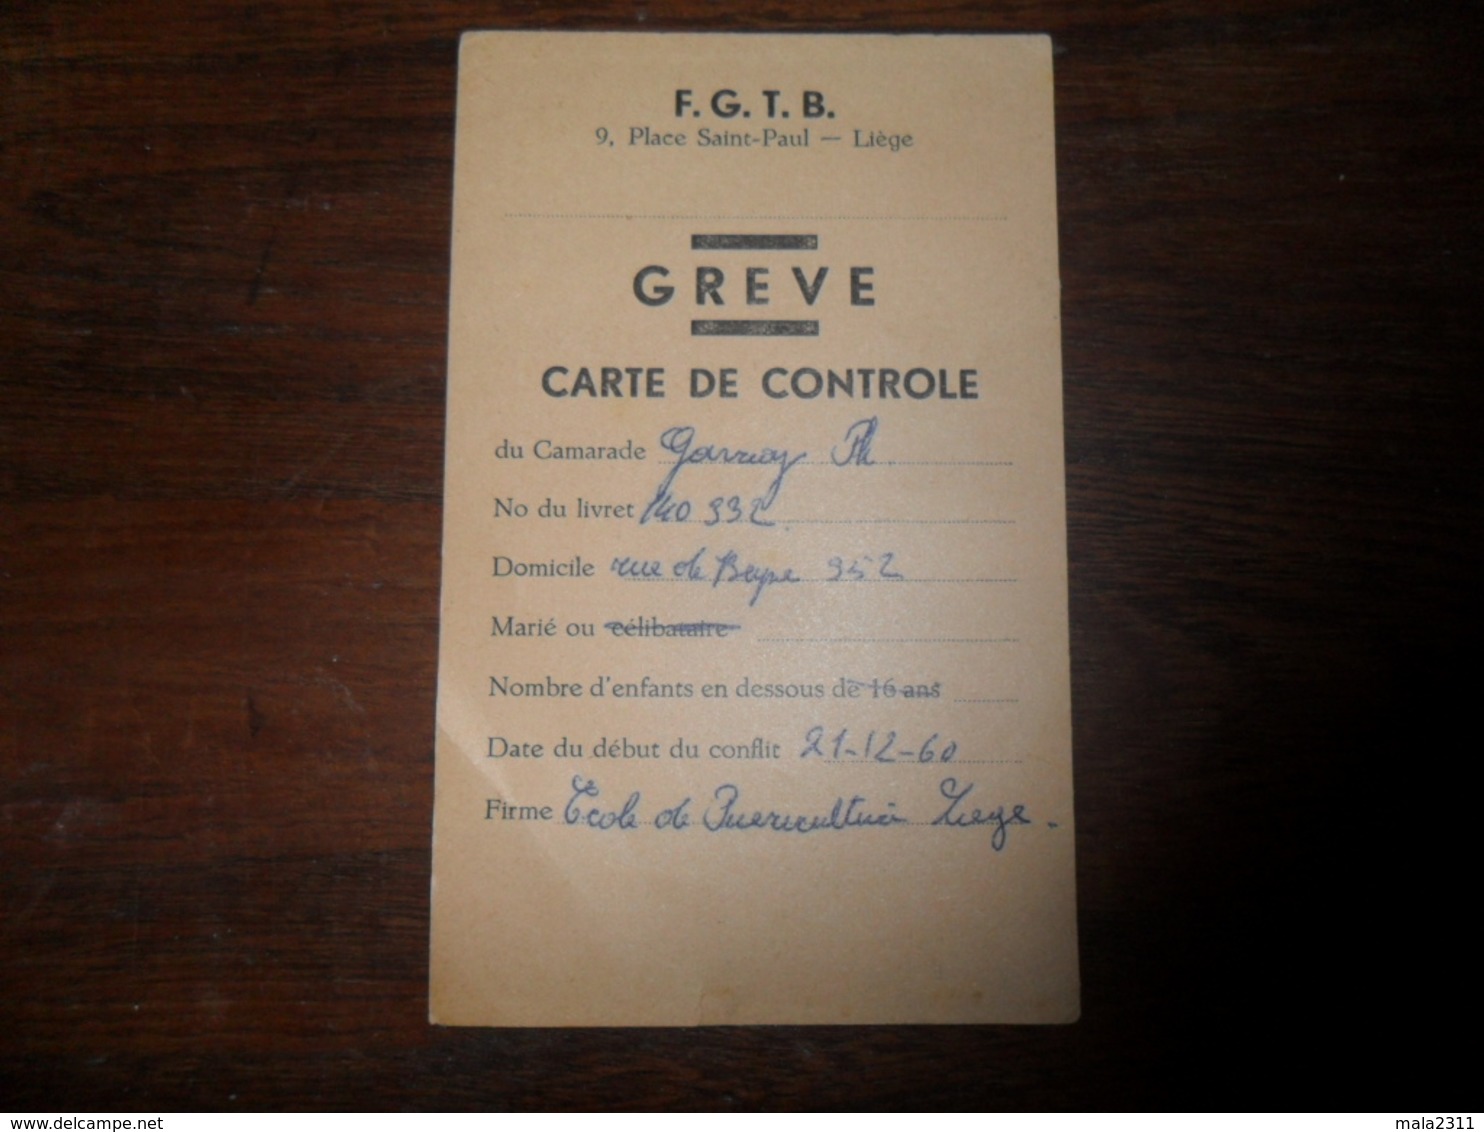 ANCIEN SOUVENIR  /  FGTB CARTE CONTROLE  GREVE 1960 - Obj. 'Souvenir De'